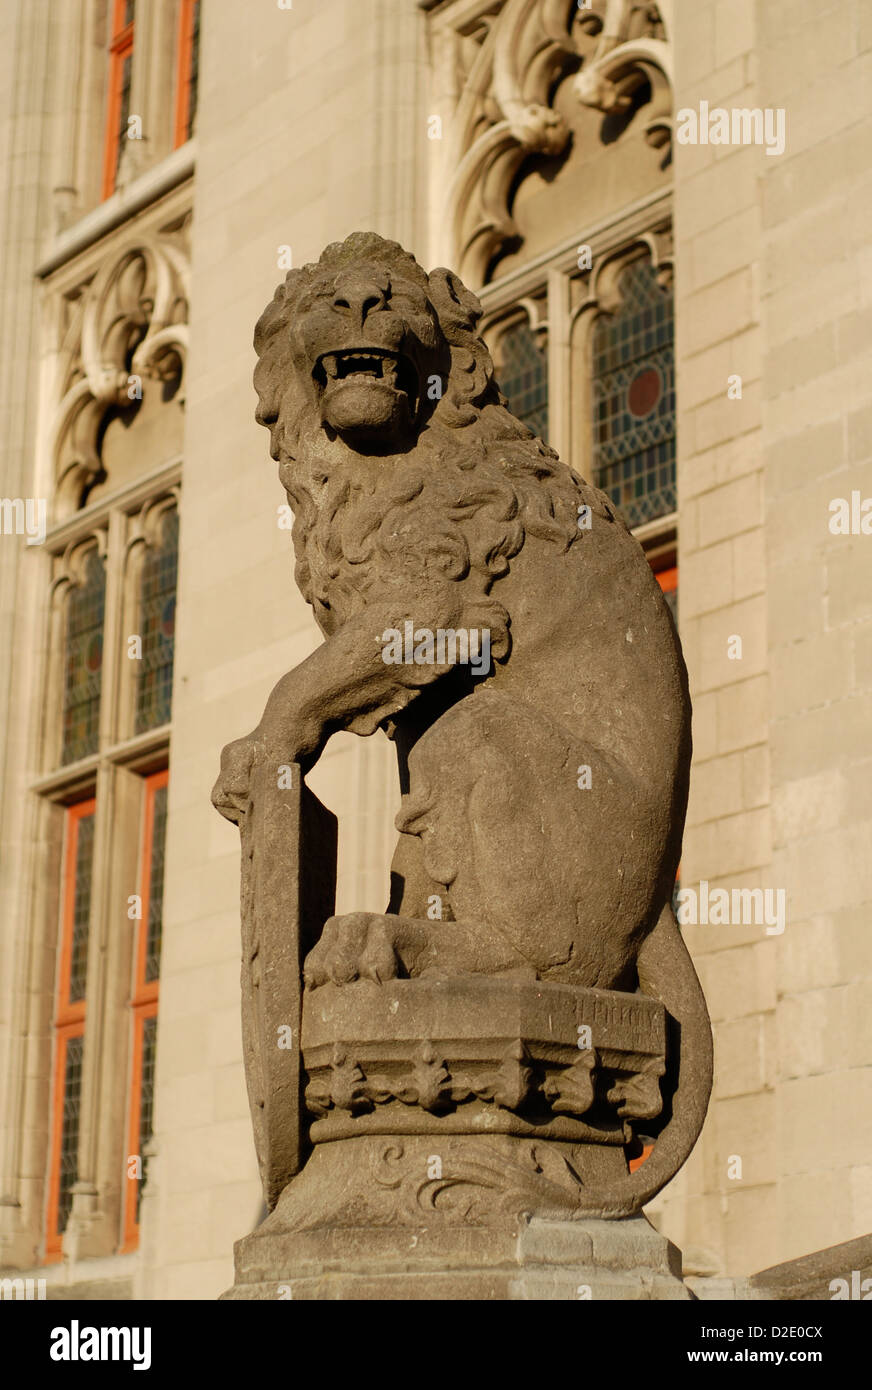 Vieux lion en pierre sculptée à l'extérieur Le Provinciaal Hof à bruges belgique Banque D'Images